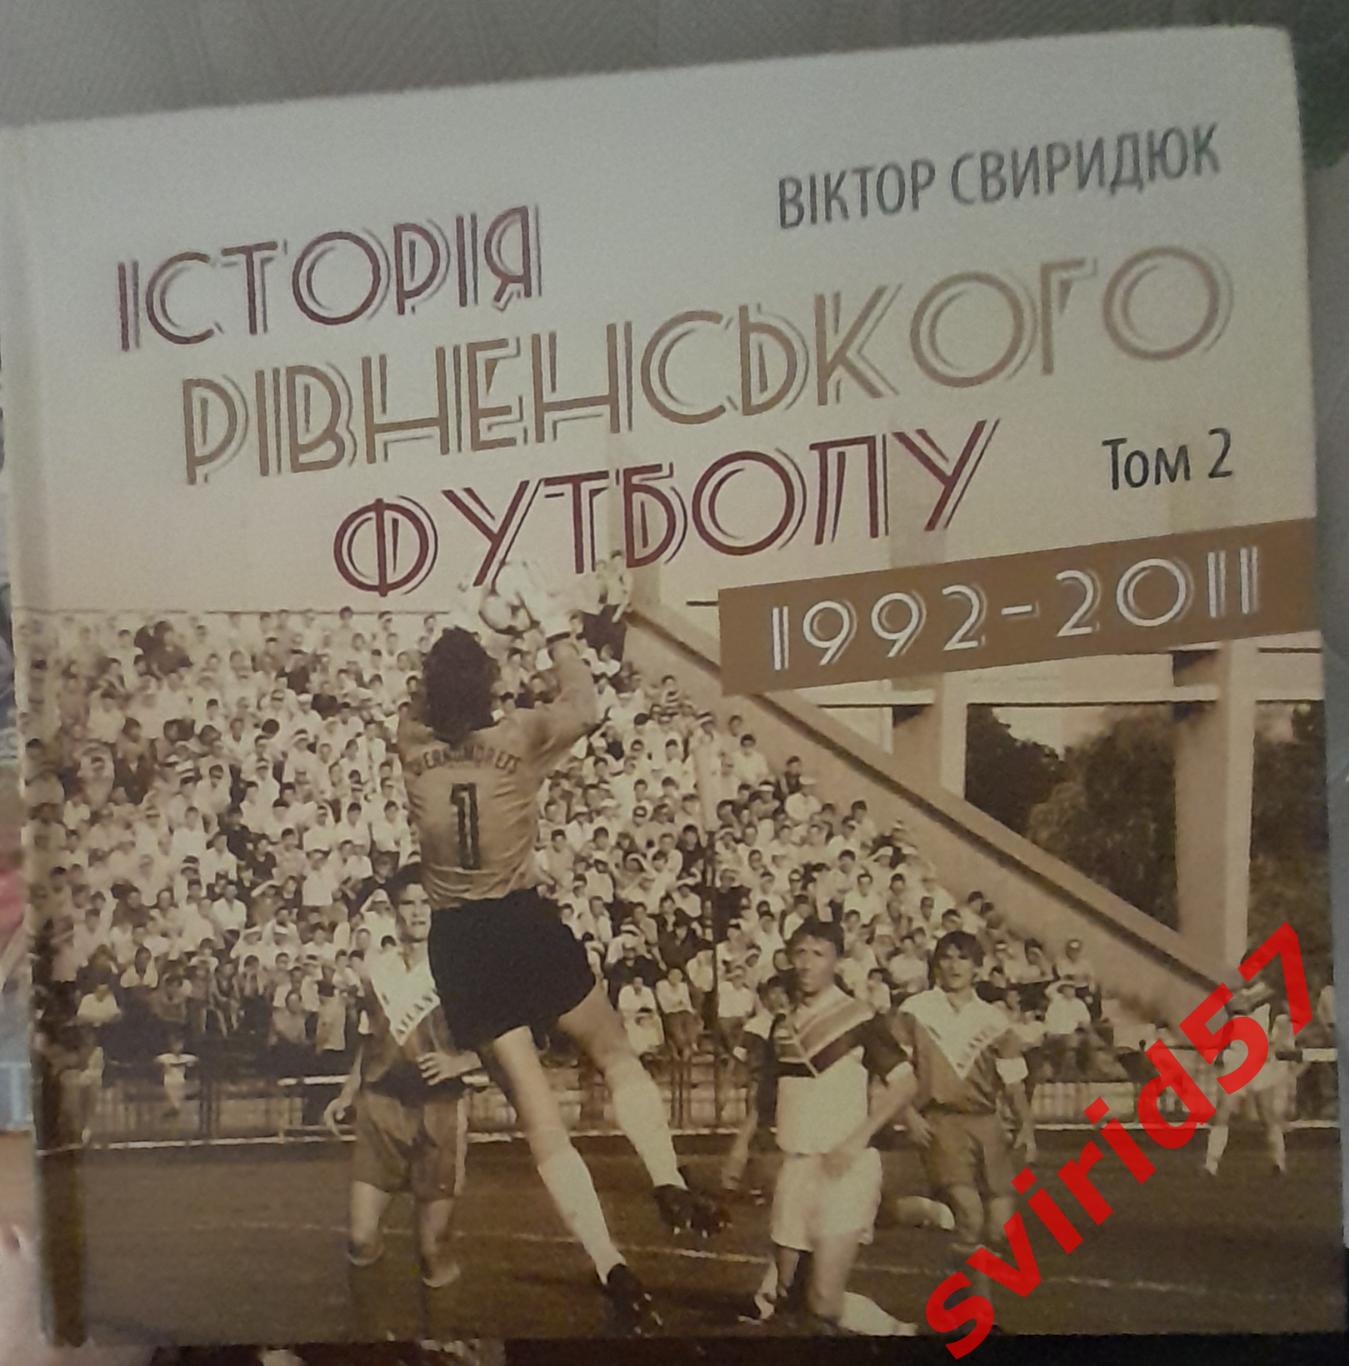 В. Свиридюк. Історія рівненського футболу 1992- 2011. Том 2.